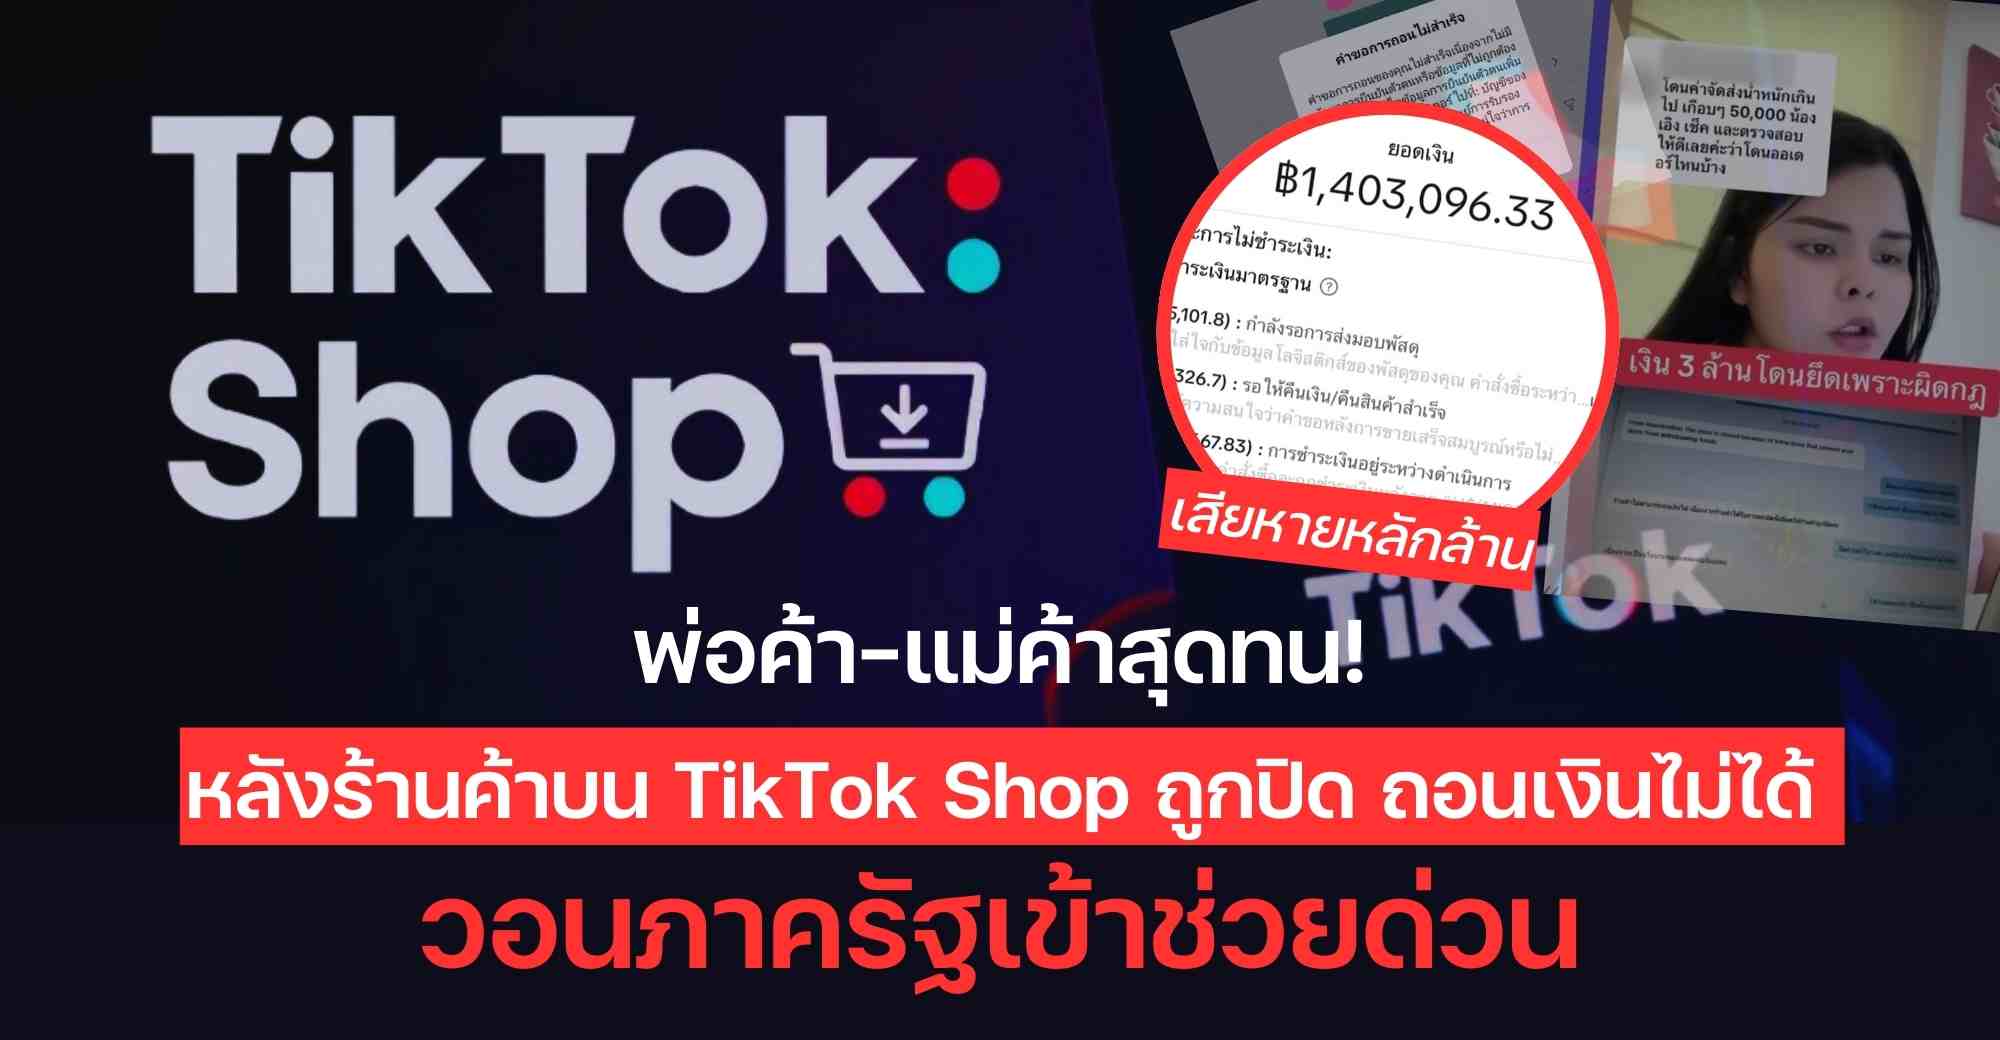 ข่าวการเงิน - Money News พ่อค้า-แม่ค้าสุดทน! หลังร้านค้าบน TikTok Shop ถูกปิด ถอนเงินไม่ได้ วอนภาครัฐเข้าช่วยด่วน